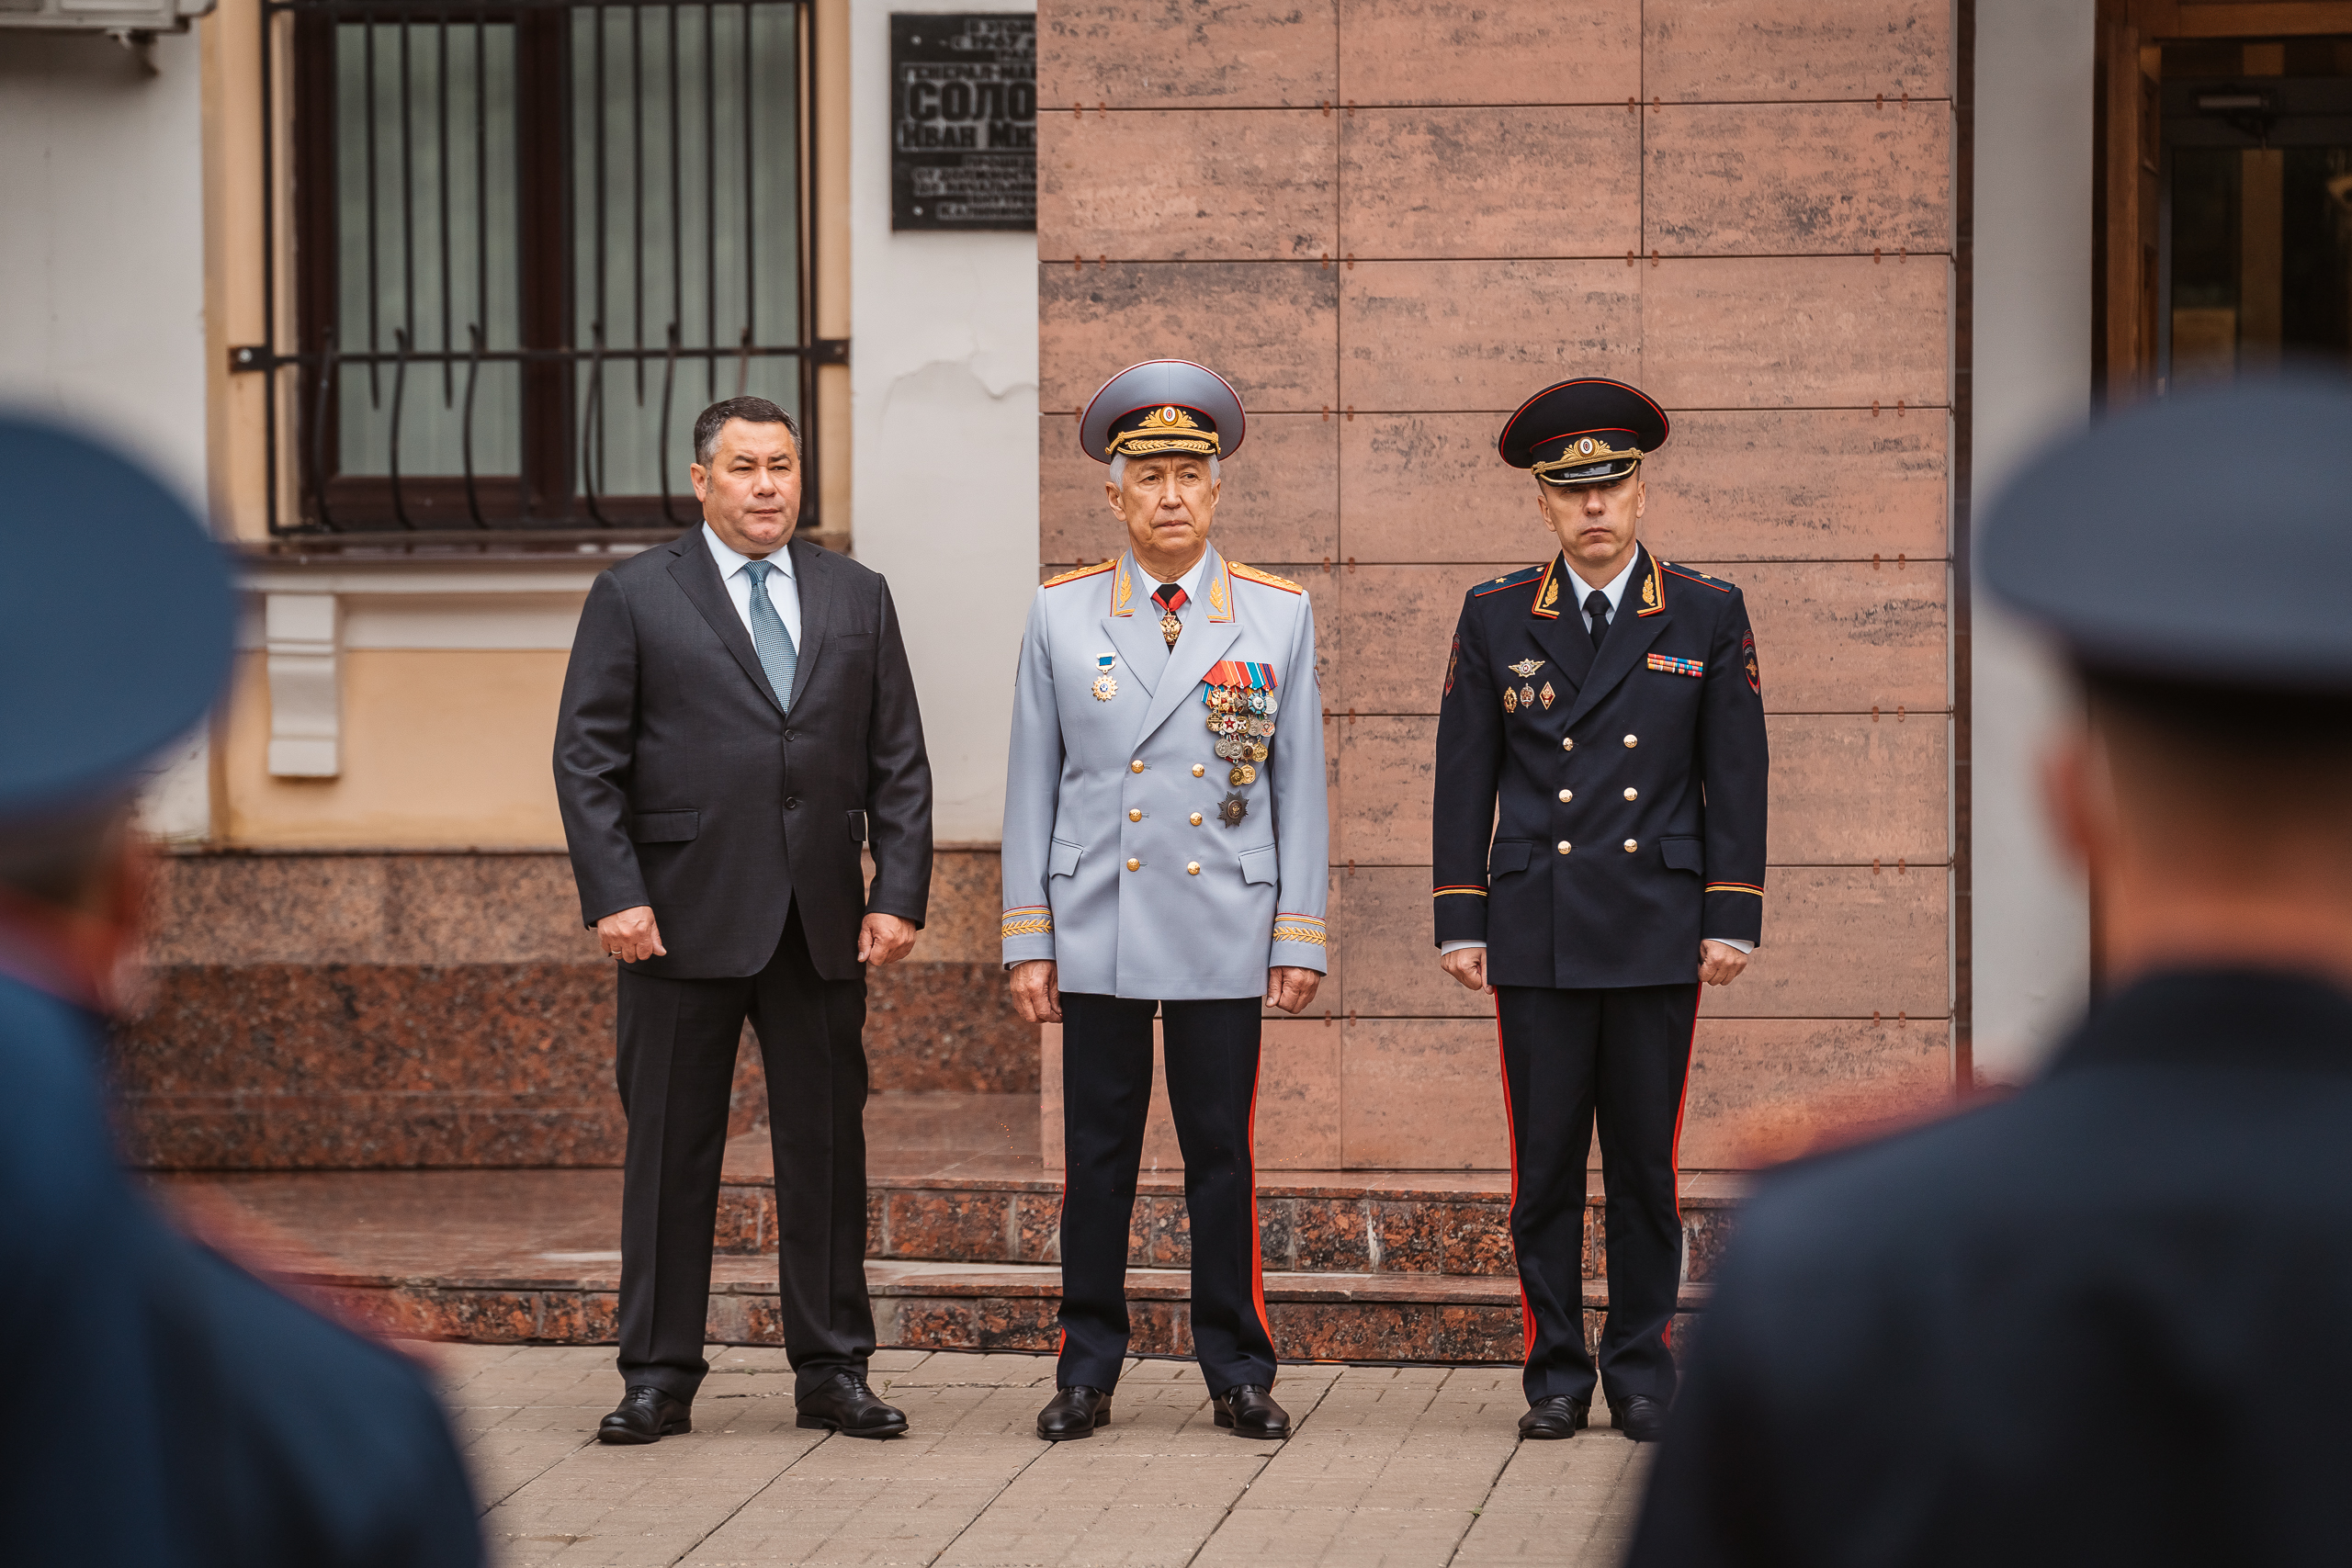 Игорь Руденя и Владимир Васильев приняли участие в торжественном мероприятии в честь 85-летия создания ГИБДД